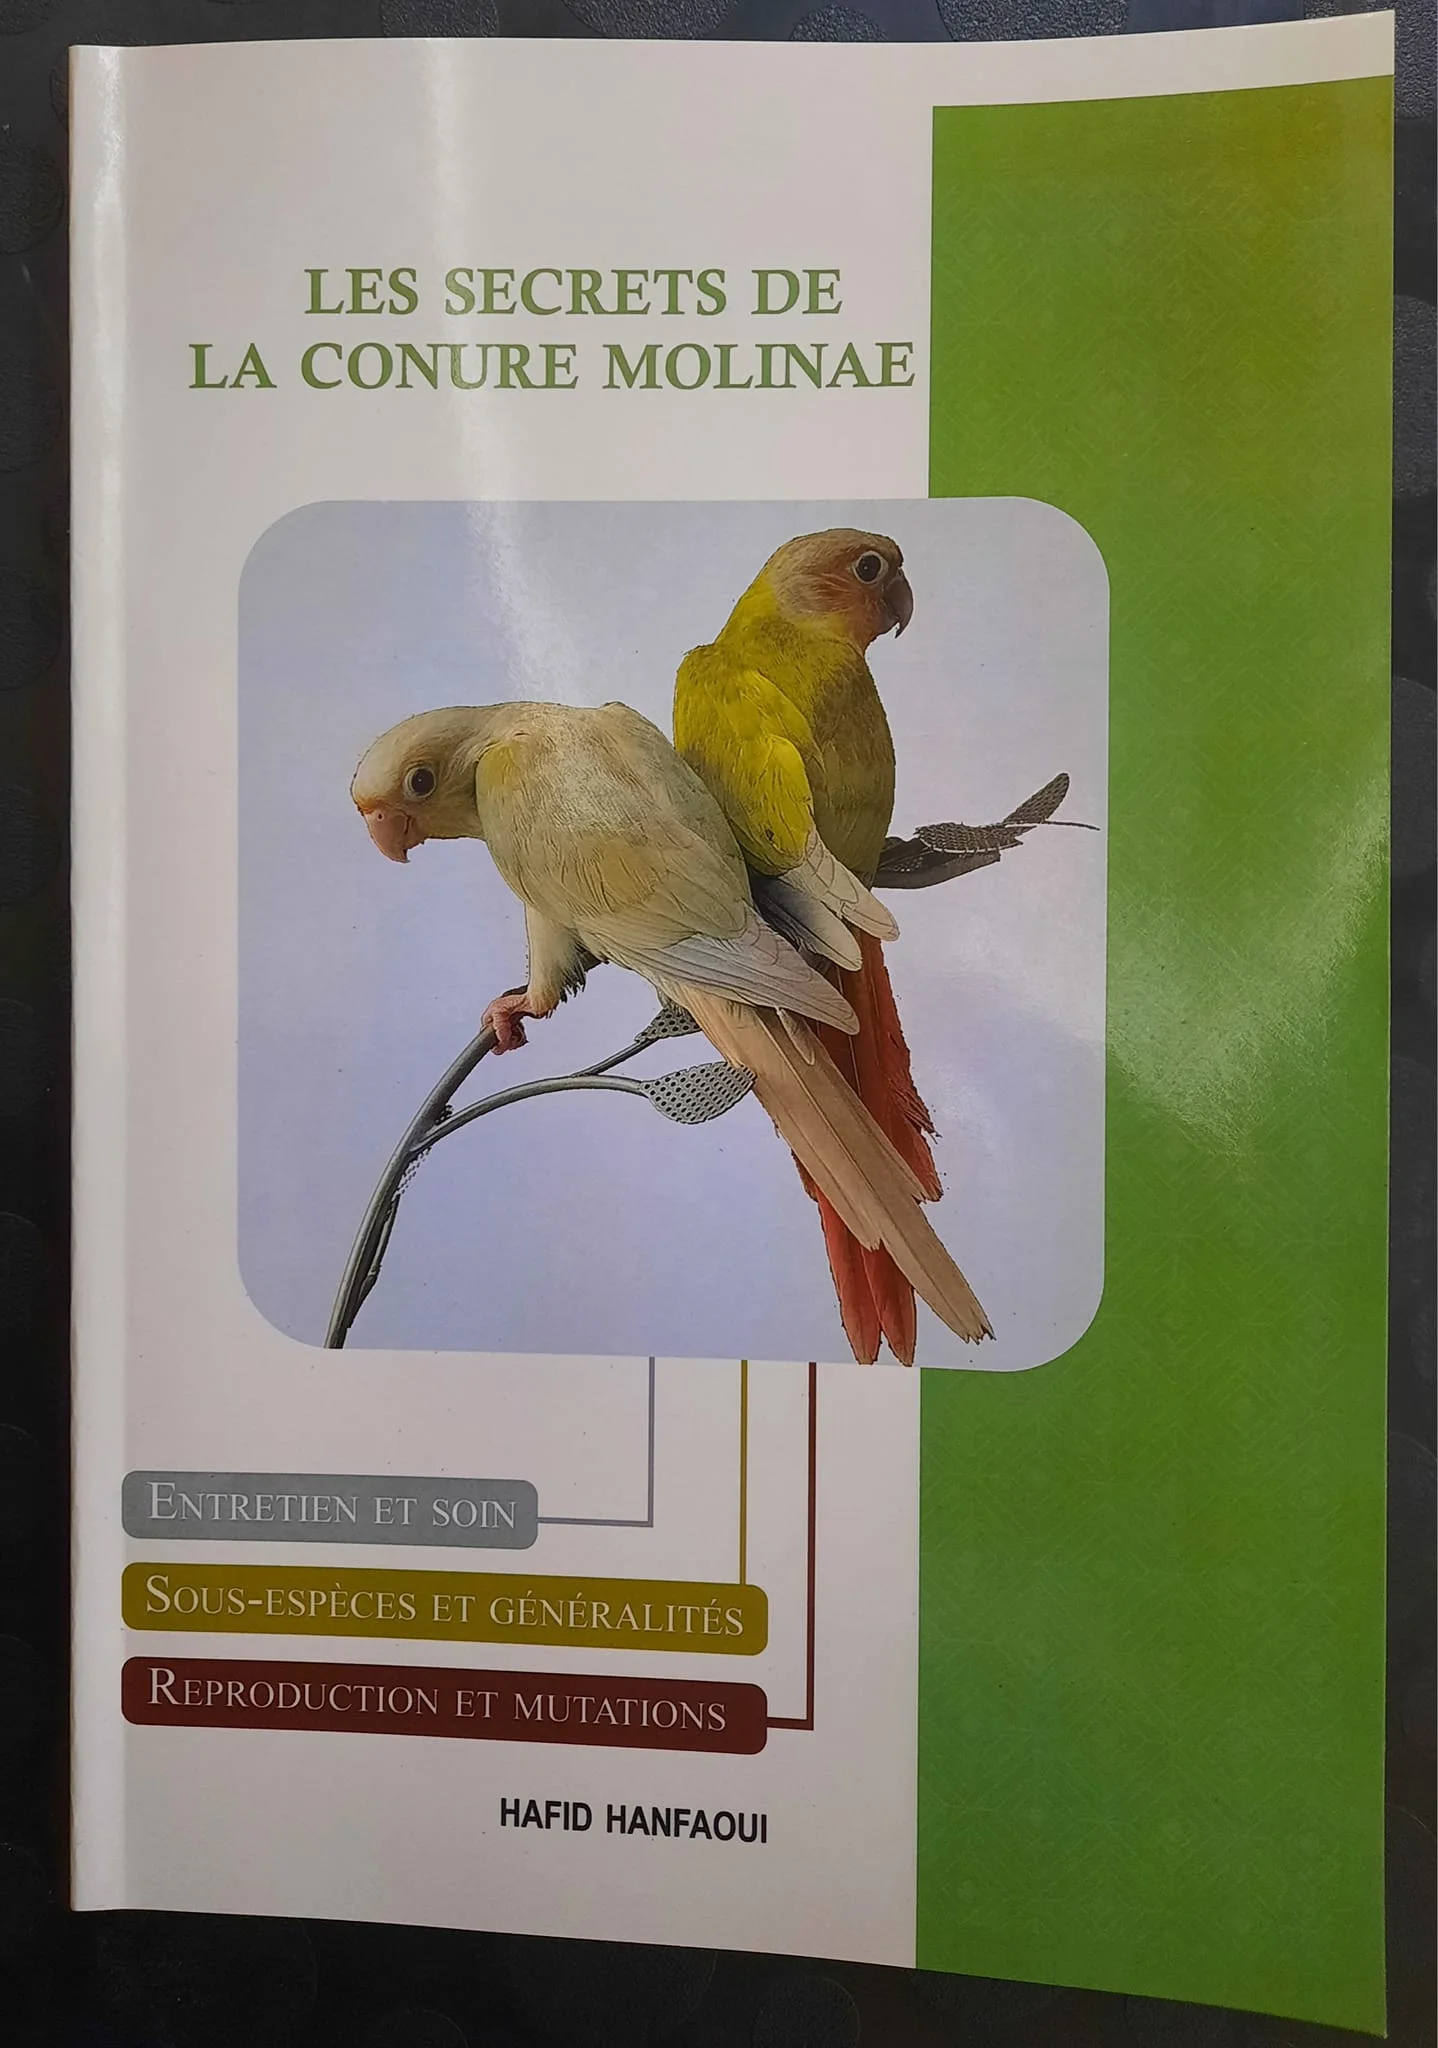 Les problèmes liés à la reproduction chez la conure à joues vertes. - Série  de livres oiseaux par Hafid Hanfaoui